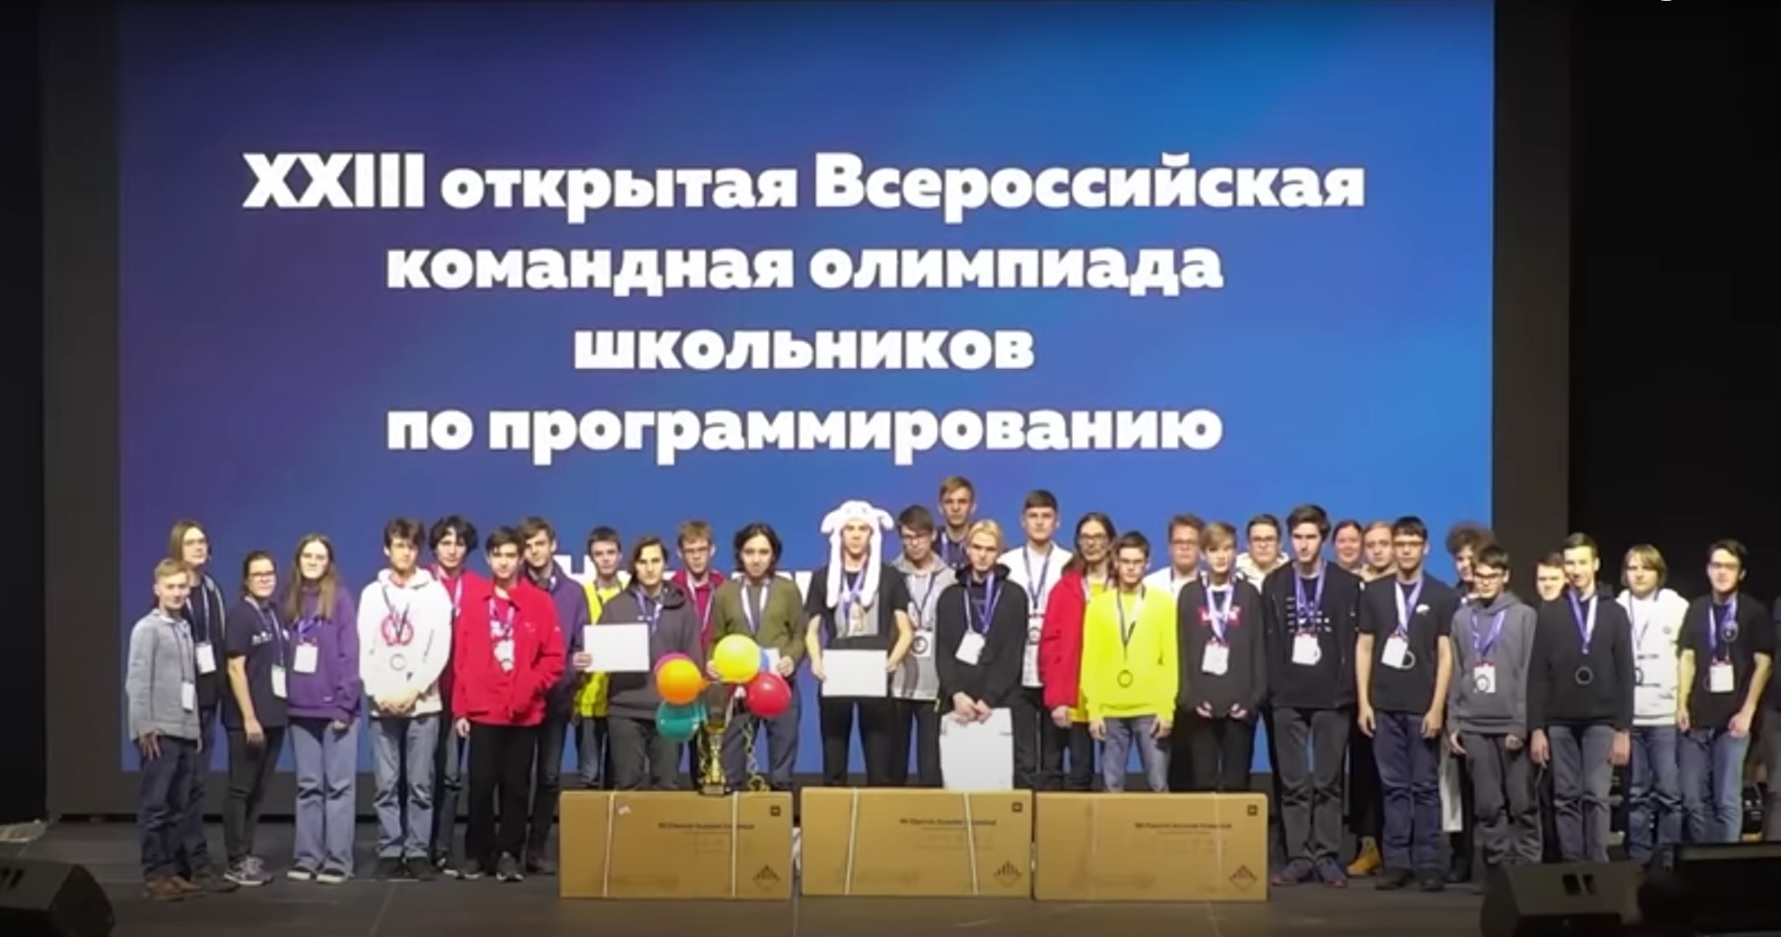 Высокие результаты учащихся СУНЦ МГУ на Всероссийской командной олимпиаде по программированию